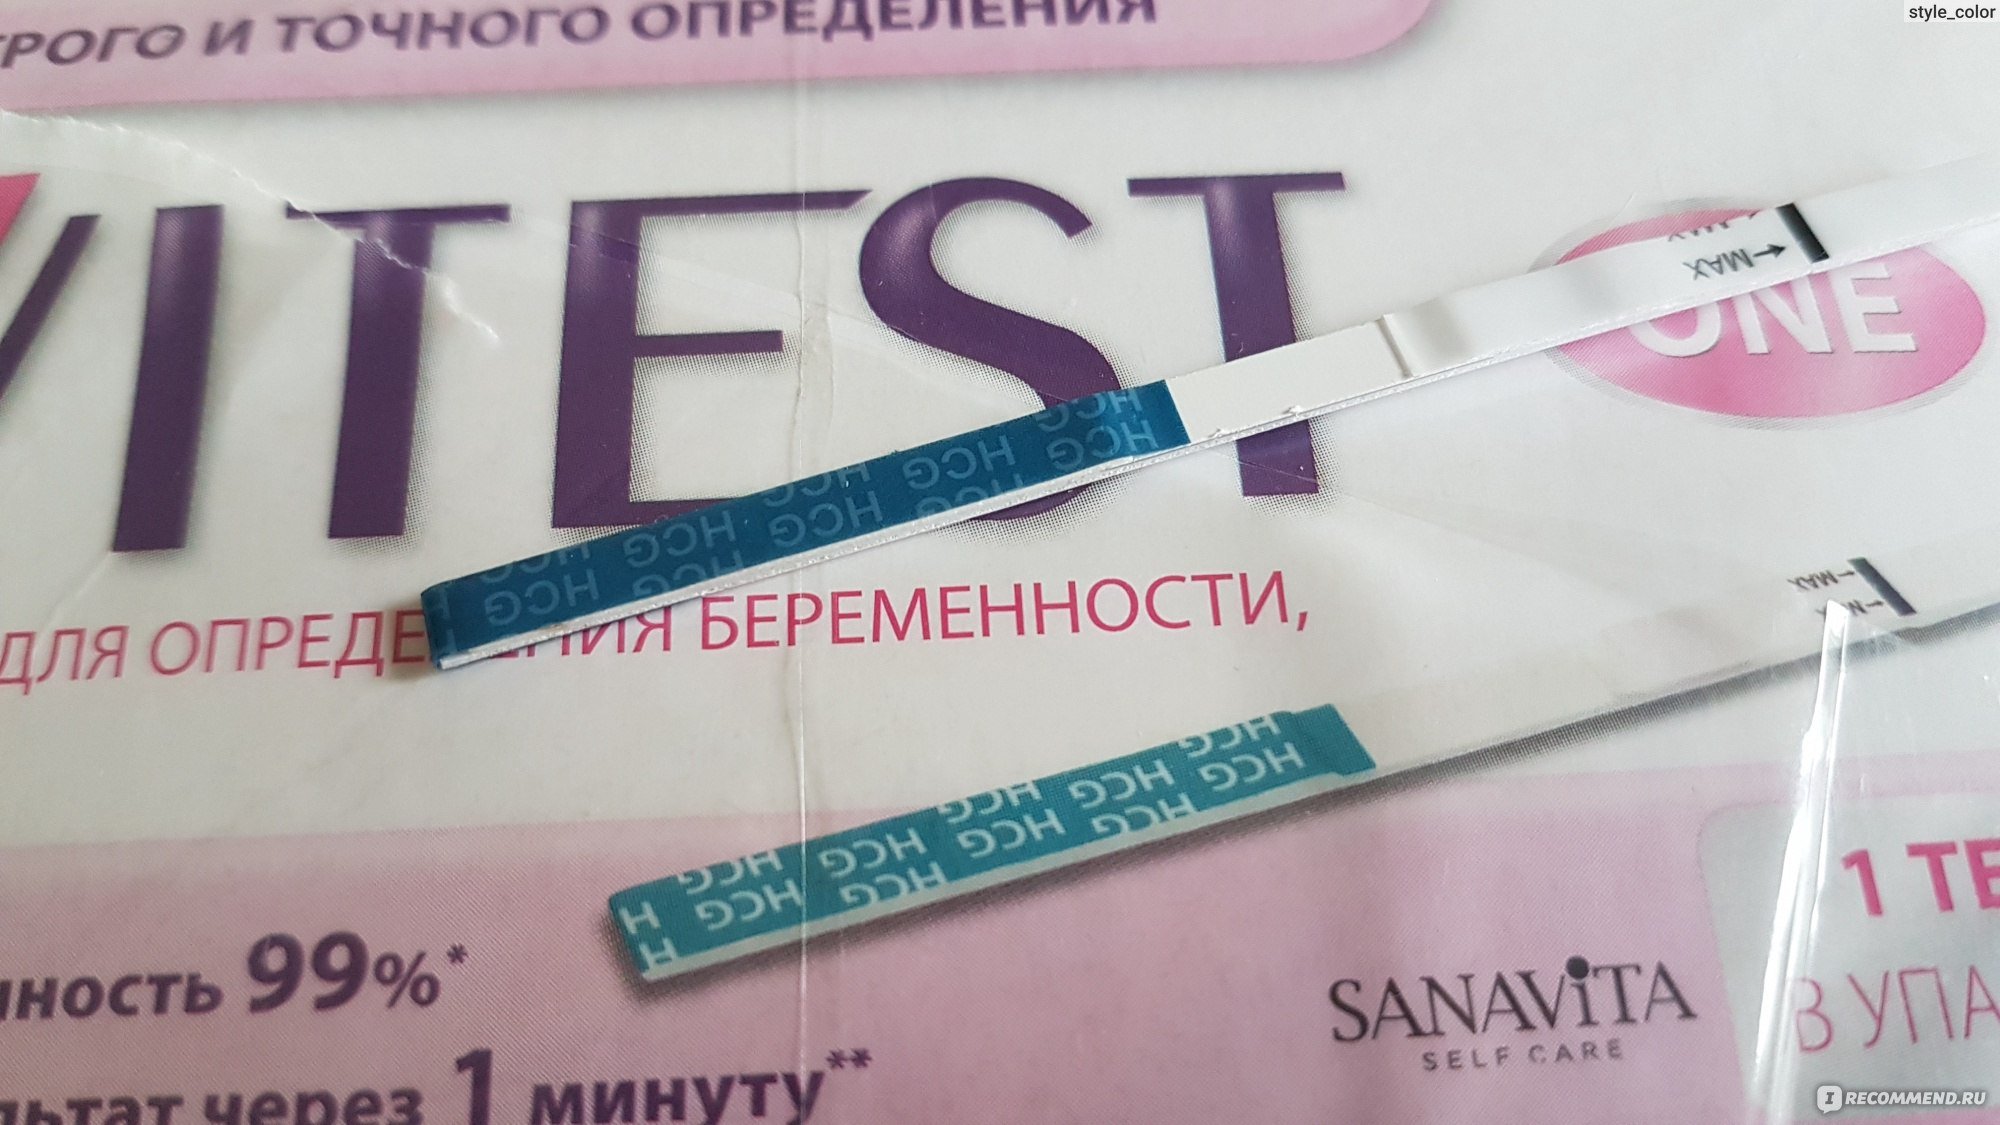 Тест на беременность 1 без рекламы. Тест на беременность эвитест. Бракованный тест на беременность. Бракованные тесты. Испорченные тесты на беременность.